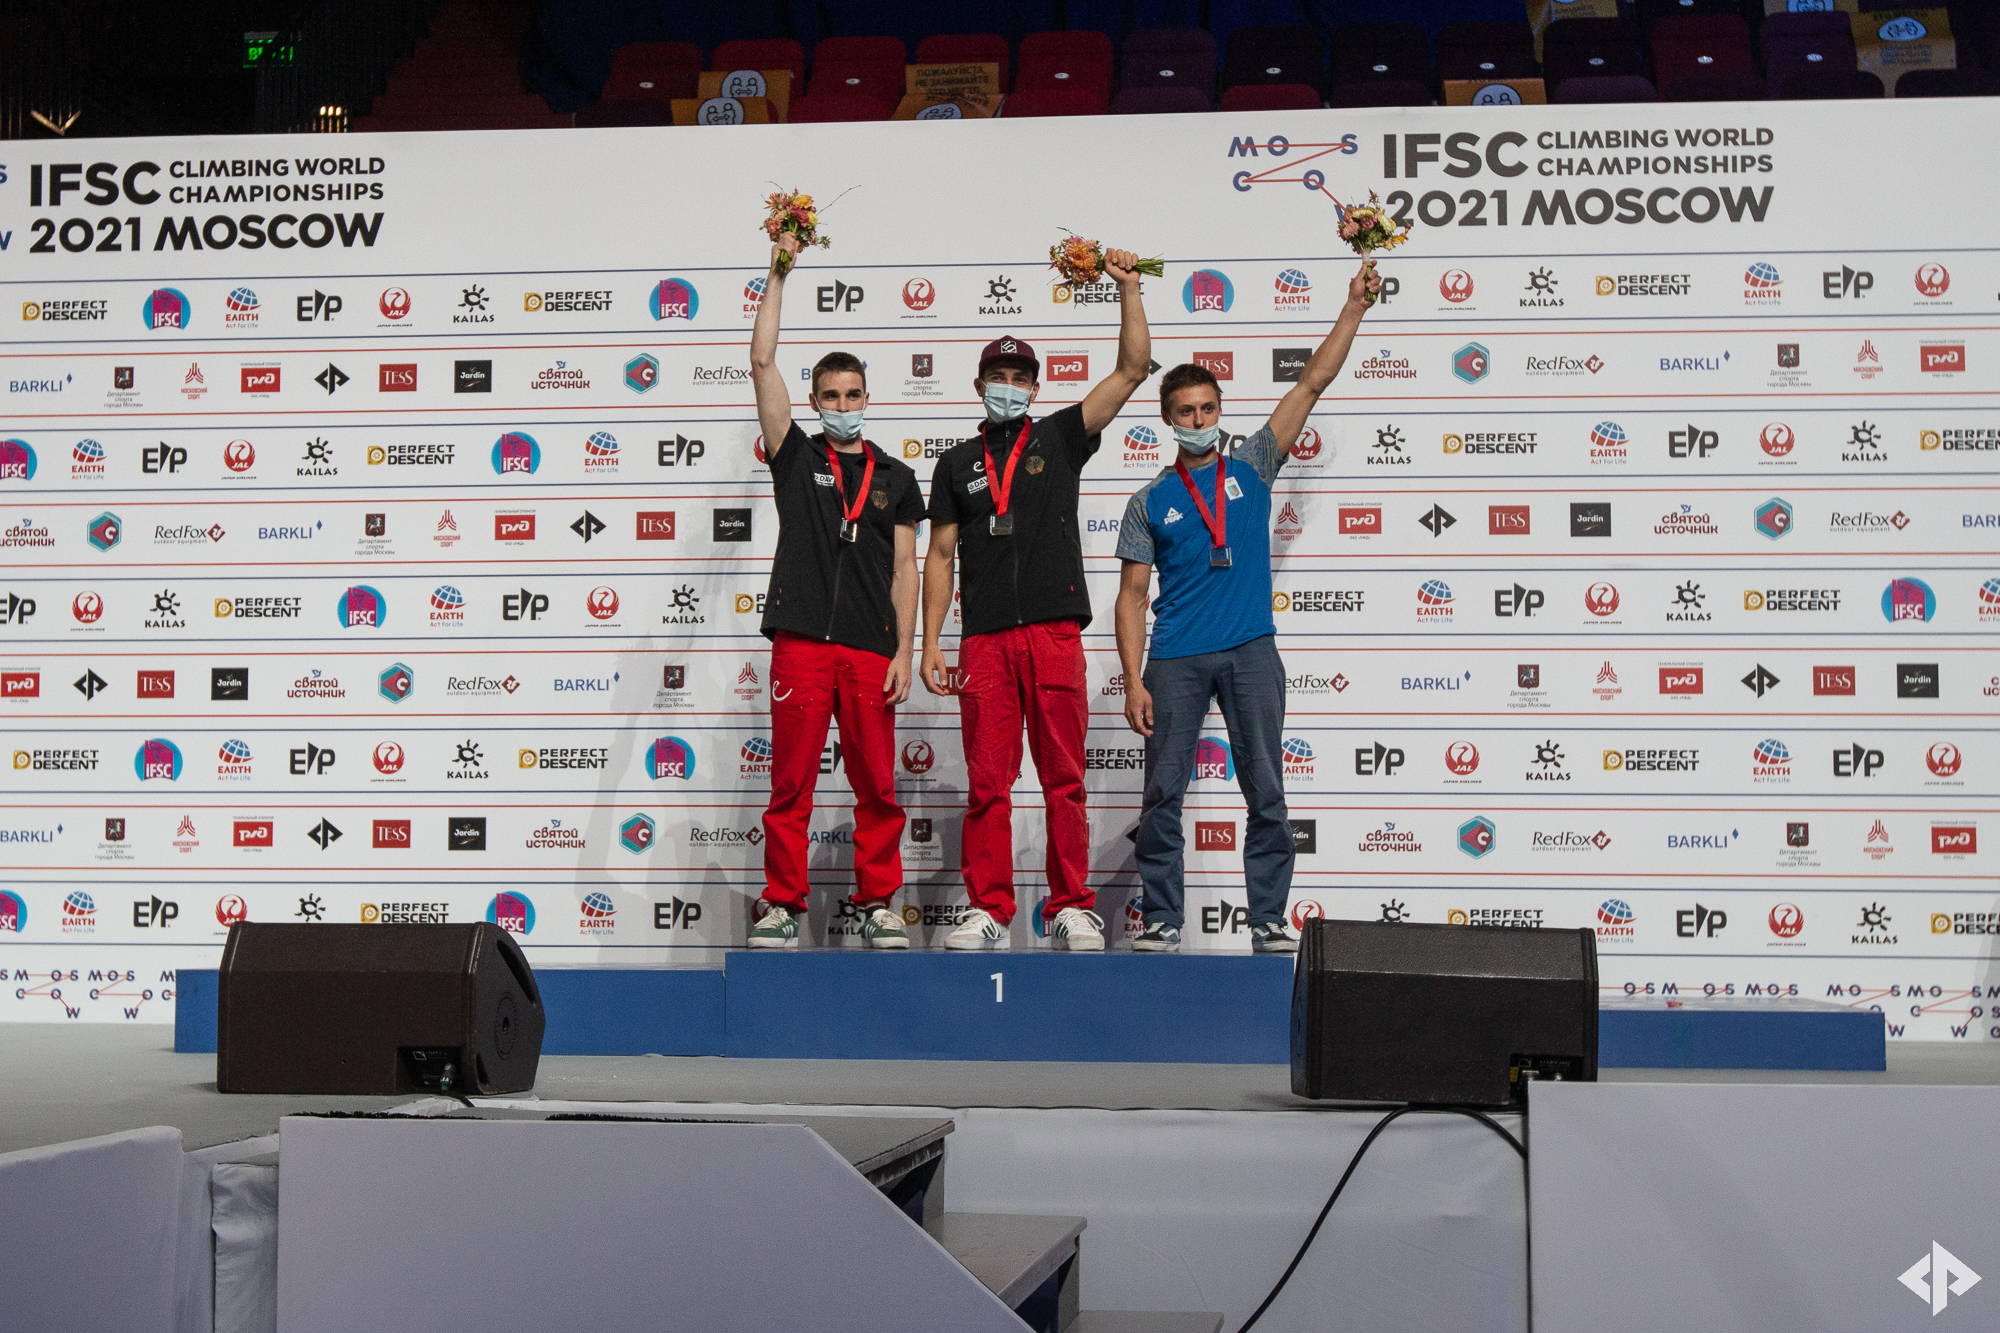 Федор Самойлов  - бронзовый призер Чемпионата Мира по скалолазанию 2021 (дисциплин многоборье) в Москве! 